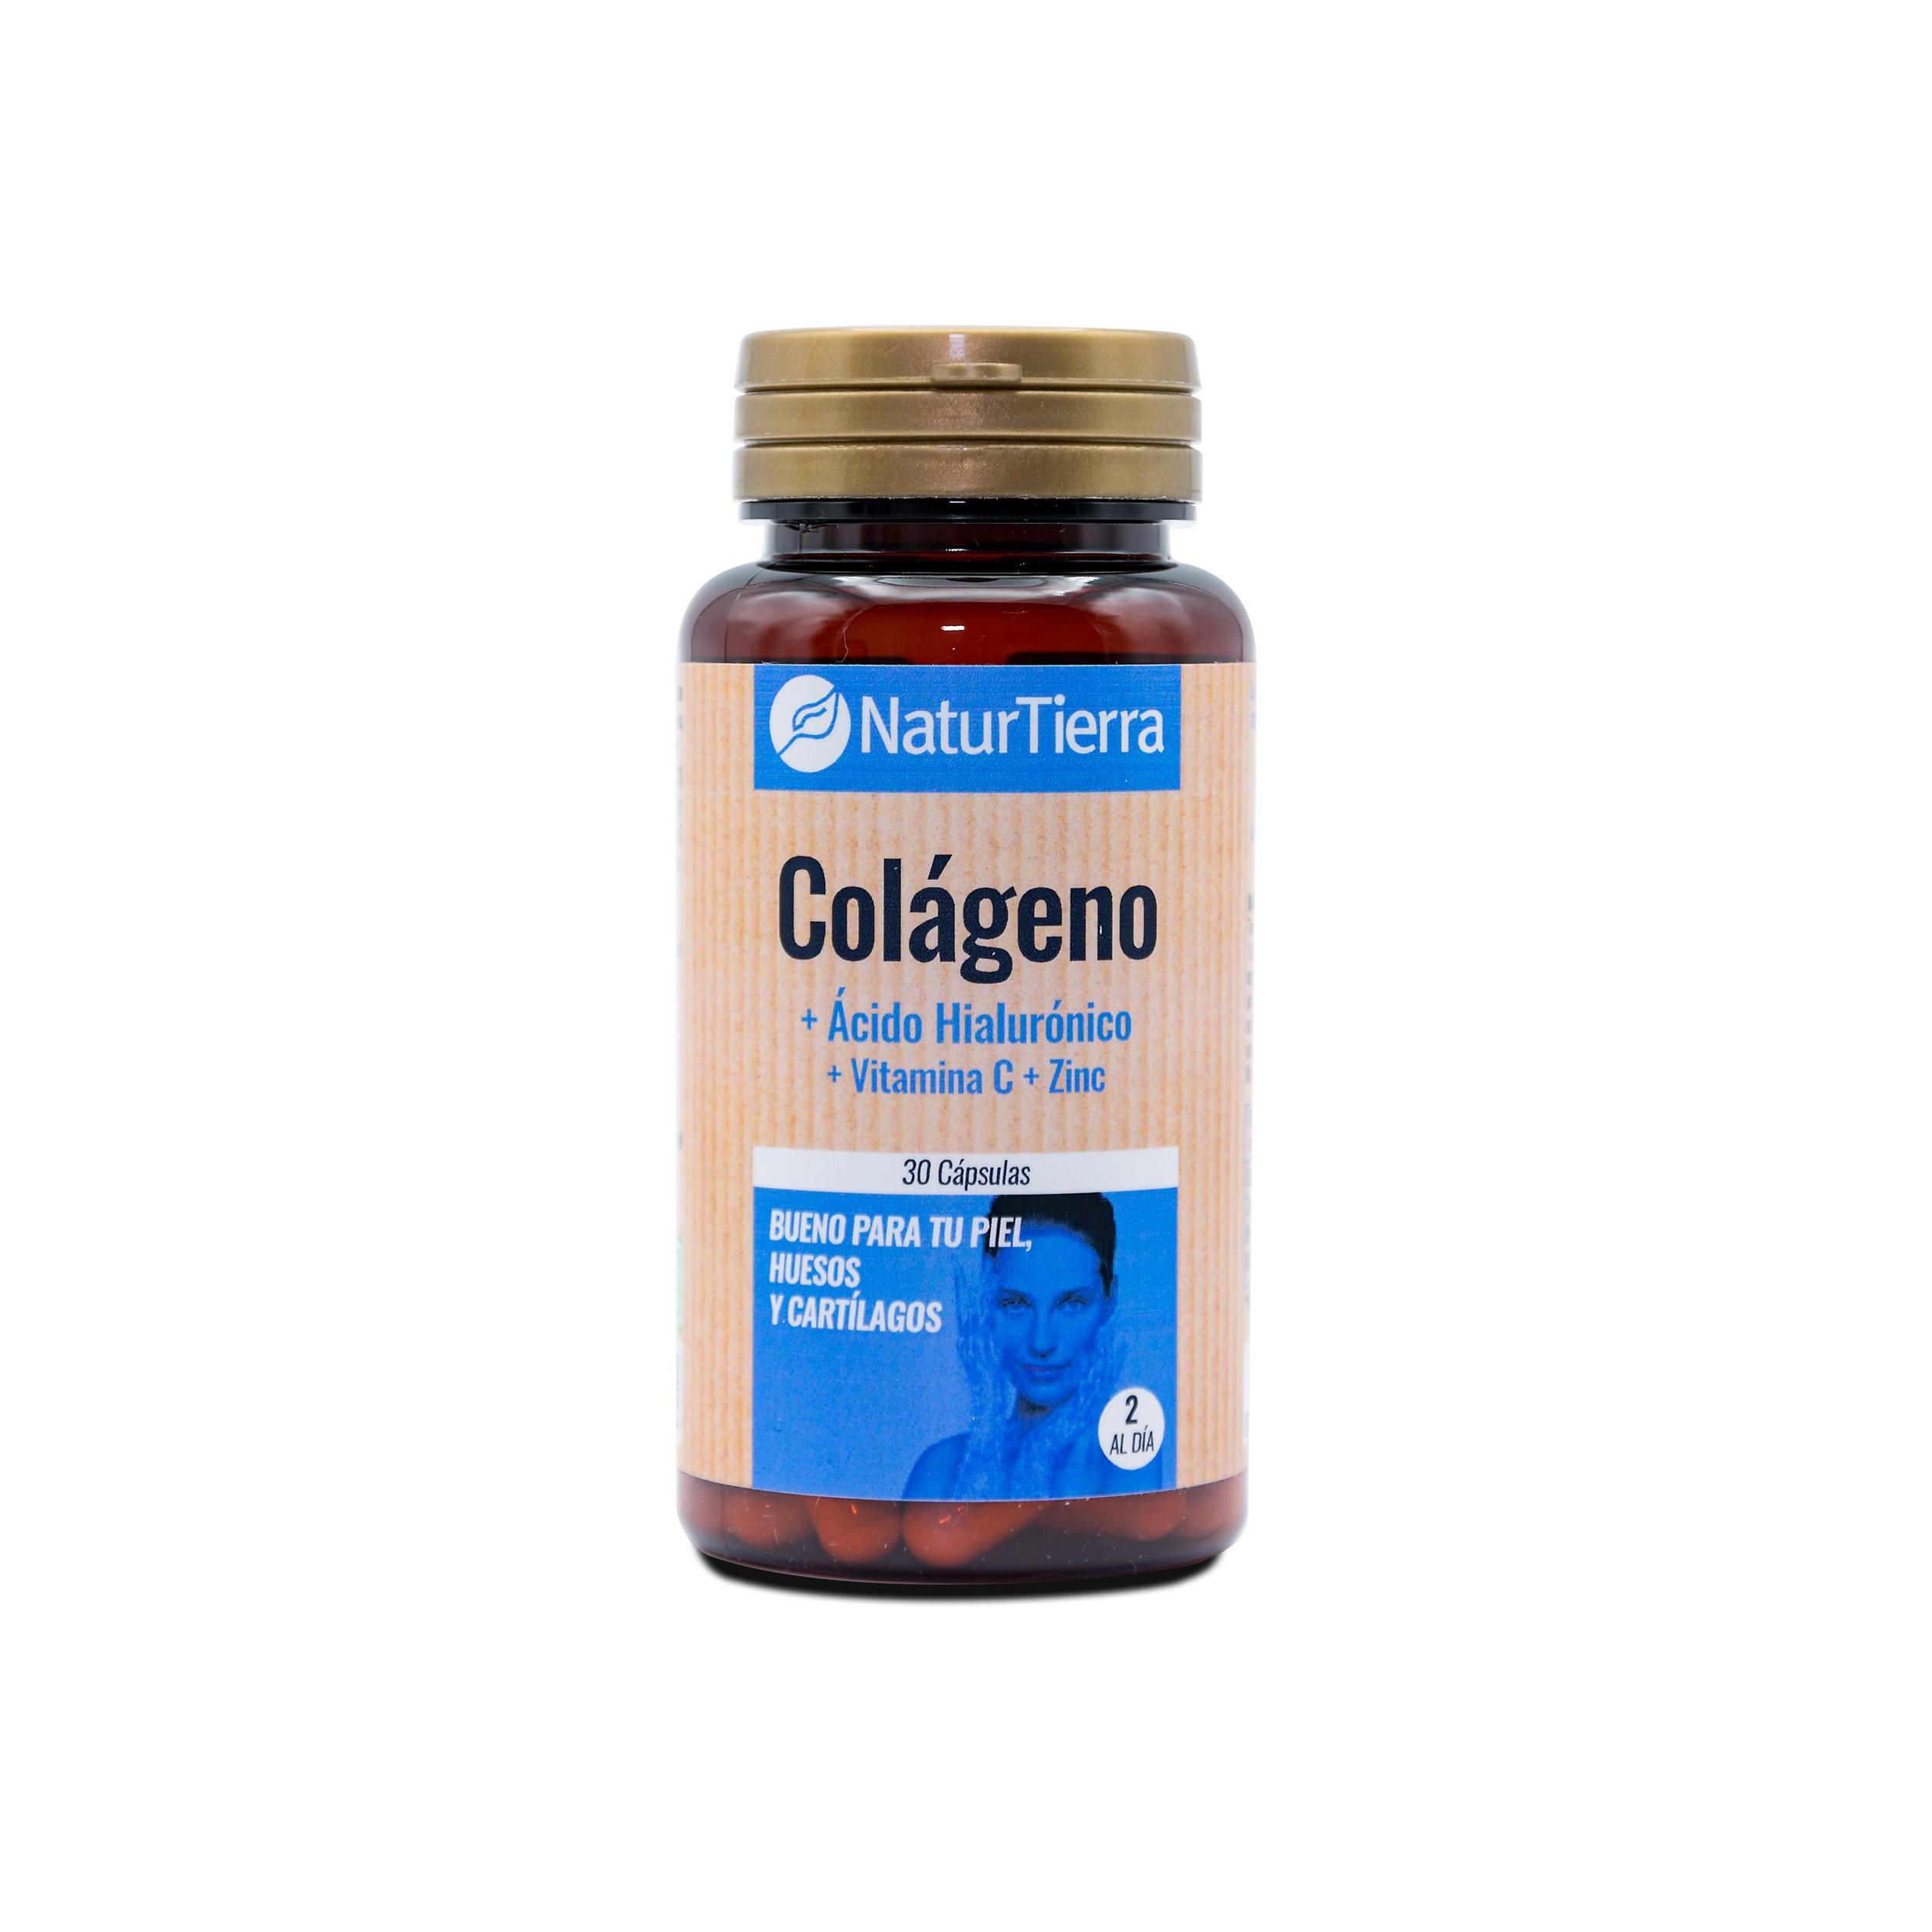 Colágeno + Glucosamina H4U Mejora la salud ósea precio